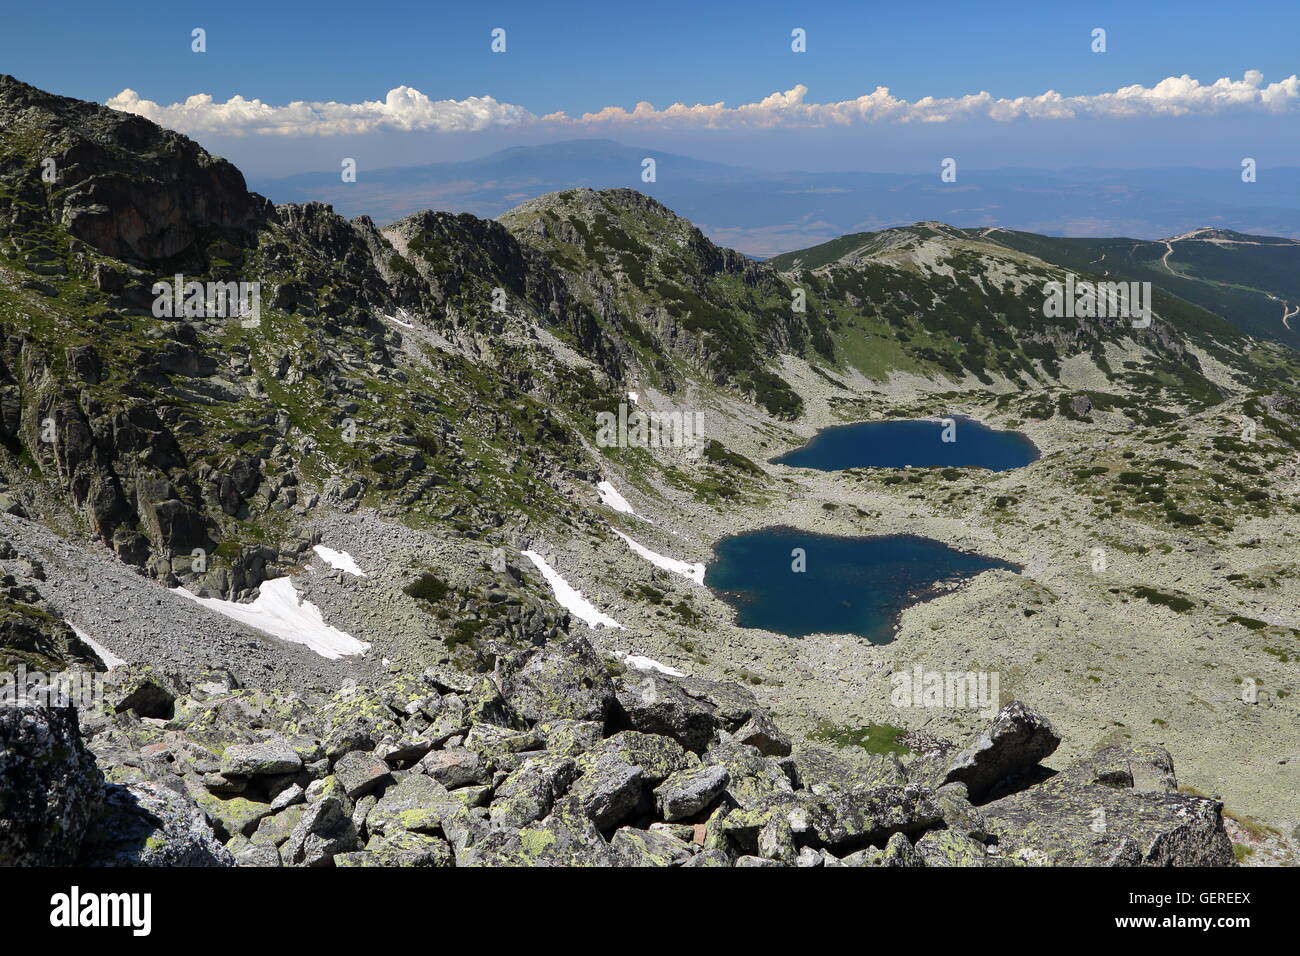 View from Mousala Peak in Rila Mountains, Bulgaria Stock Photo